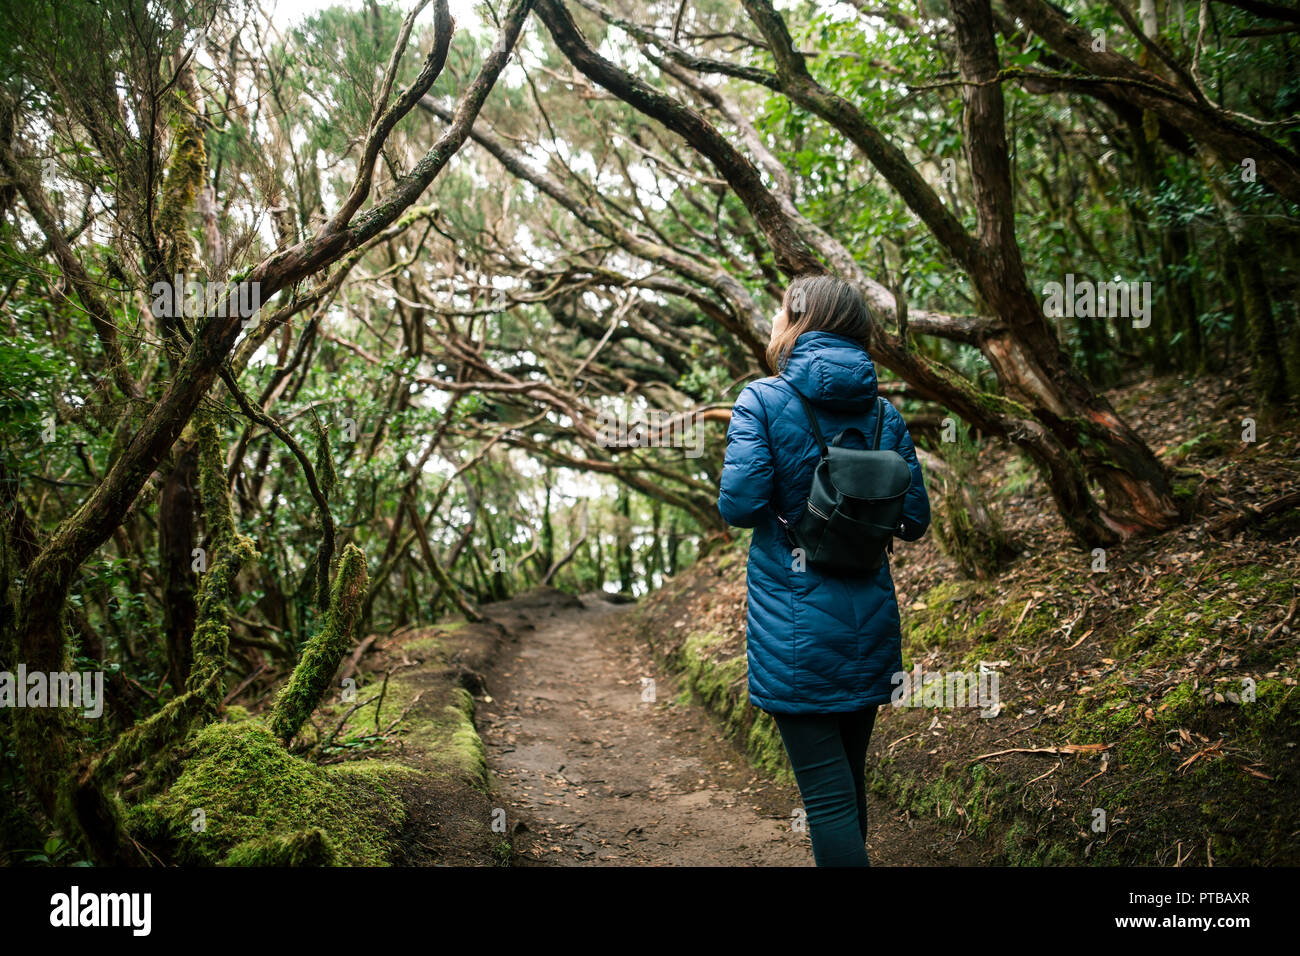 Vue arrière de traveler femme marche en forêt. Concept de voyage. Pays d'Anaga Park, Réserve de biosphère, forêt laurifère, Tenerife, Îles Canaries Banque D'Images